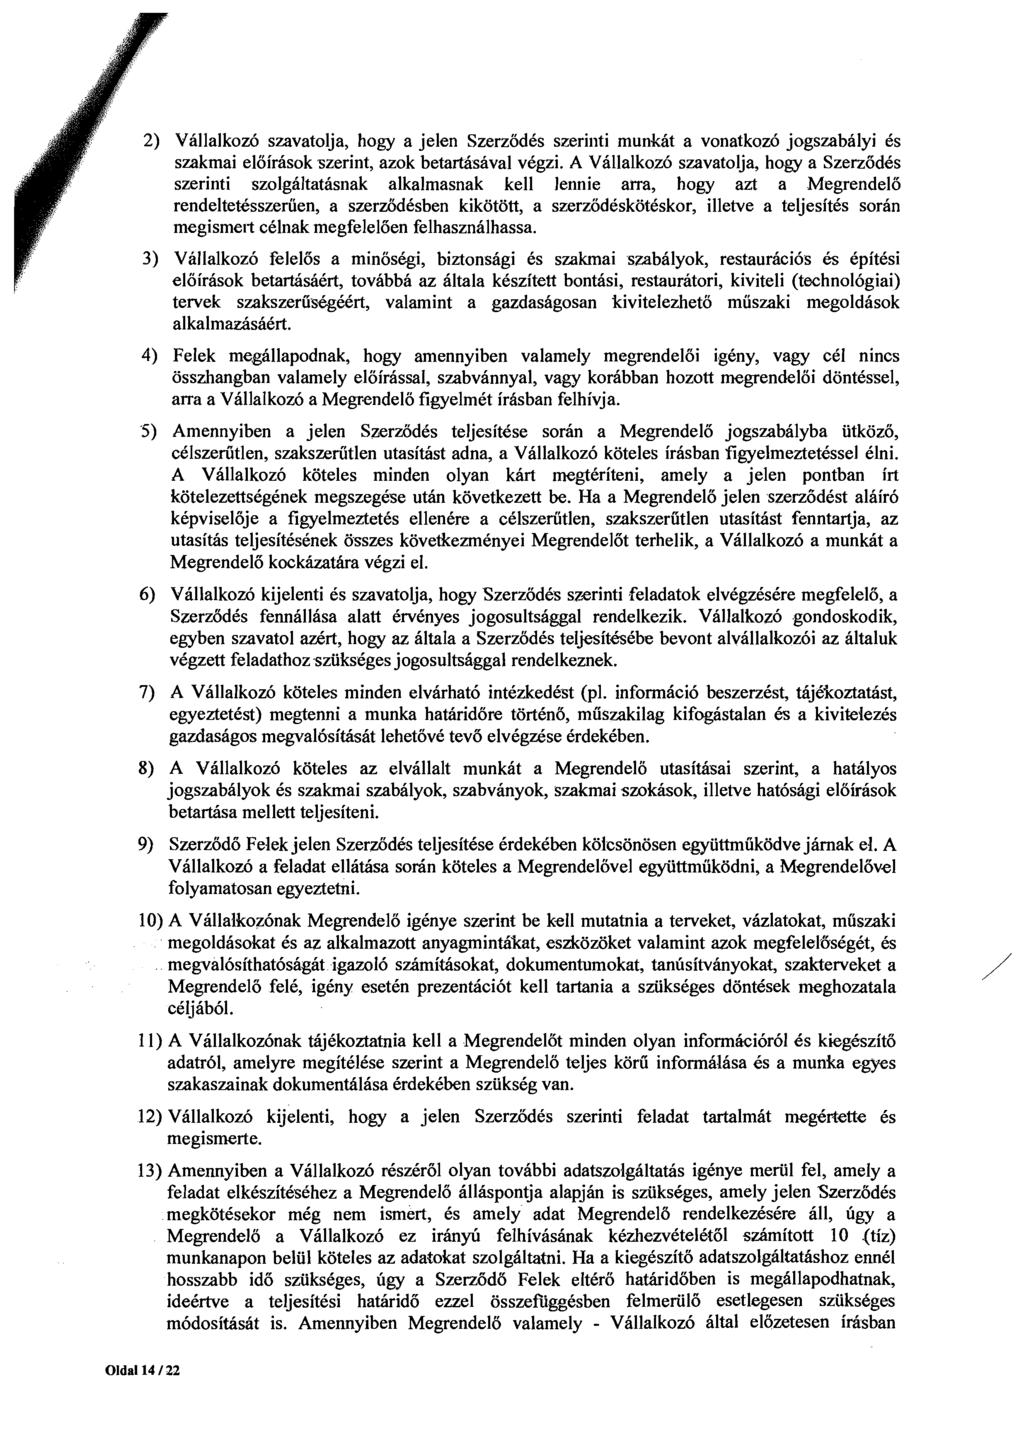 2) Vallalkoz6 szavatolja, hogy a jelen SzerzodCs szeriilti munkht a vonatkoz6 jogszabalyi 6s szakmai eloirhsok szerint, azok betartisaval vkgzi.